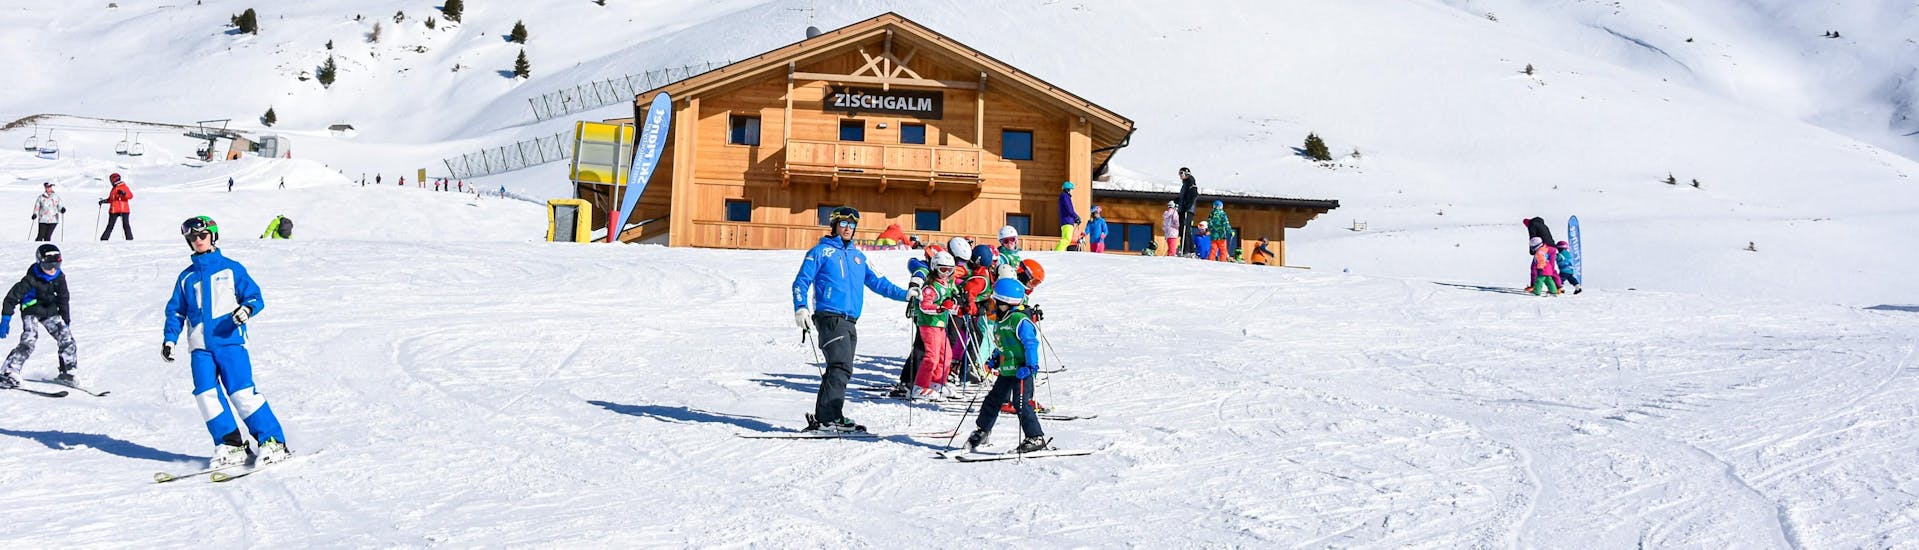 Cours de ski Enfants.